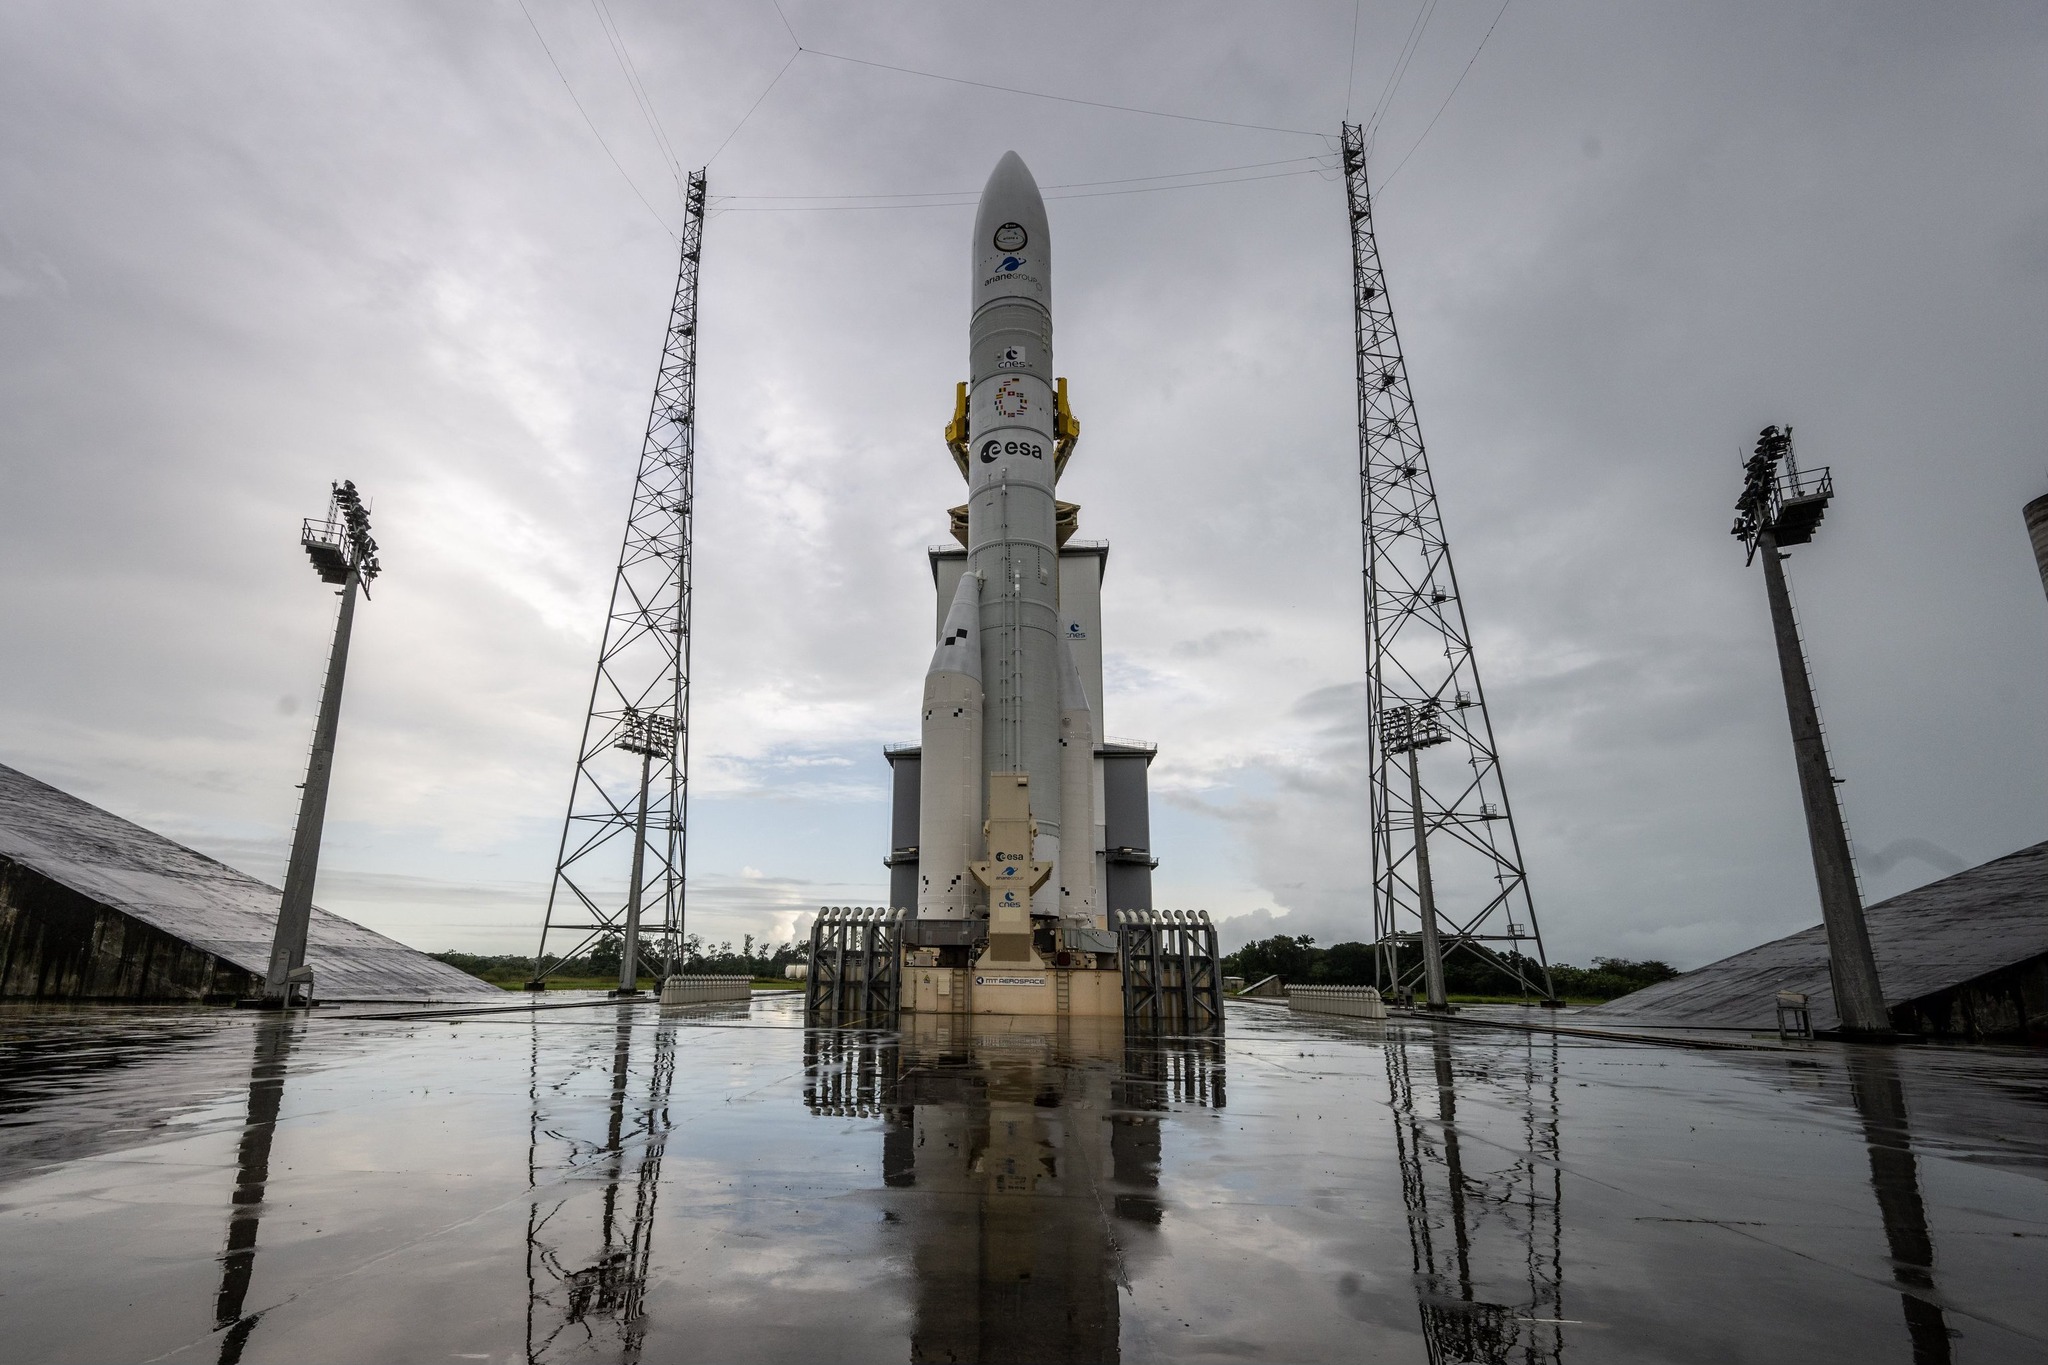 Agenția Spațială Europeană a lansat cu succes pentru prima dată Ariane 6, o rachetă ce poate transporta sateliți și alte echipamente pe orbita joasă a Pământului.